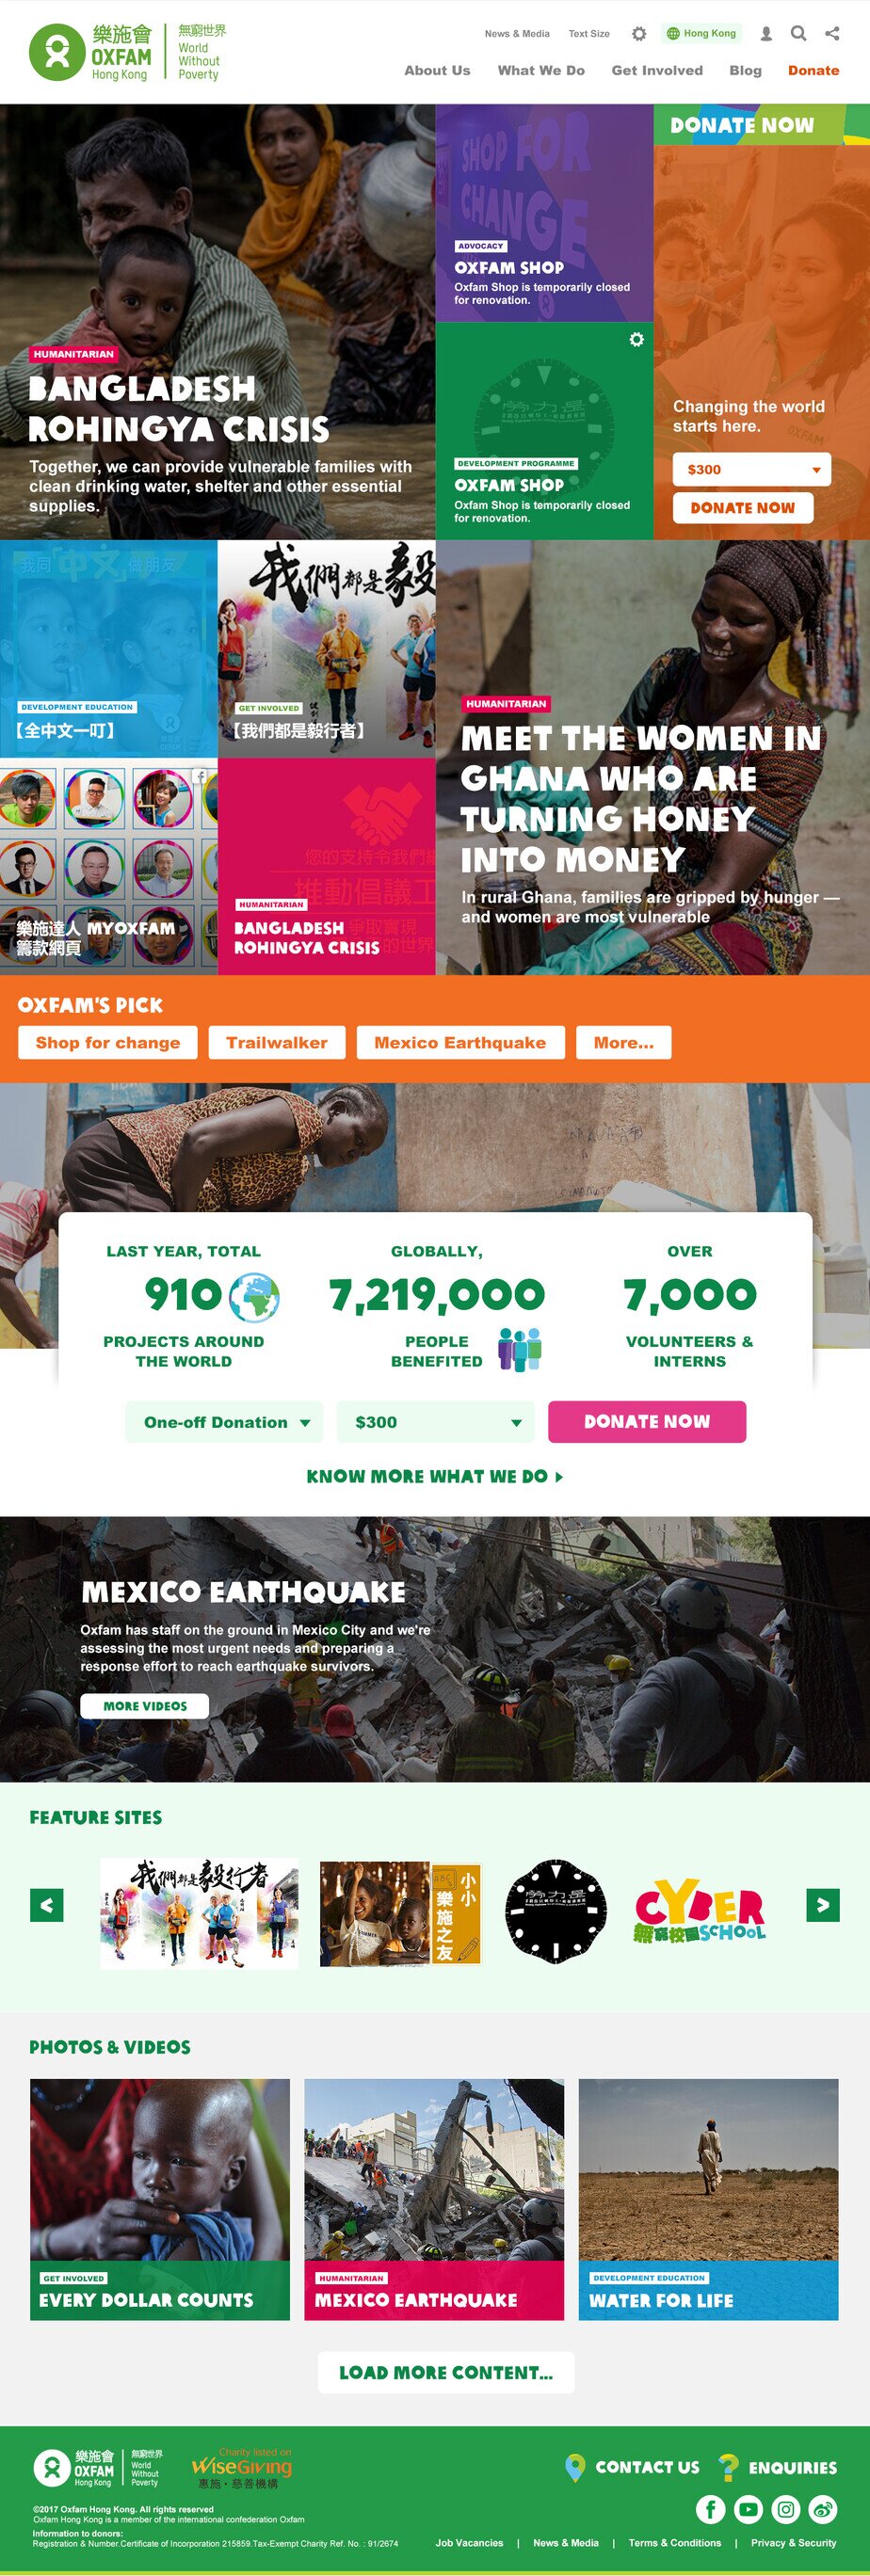 Oxfam Hong Kong website screenshot for desktop version 1 of 7